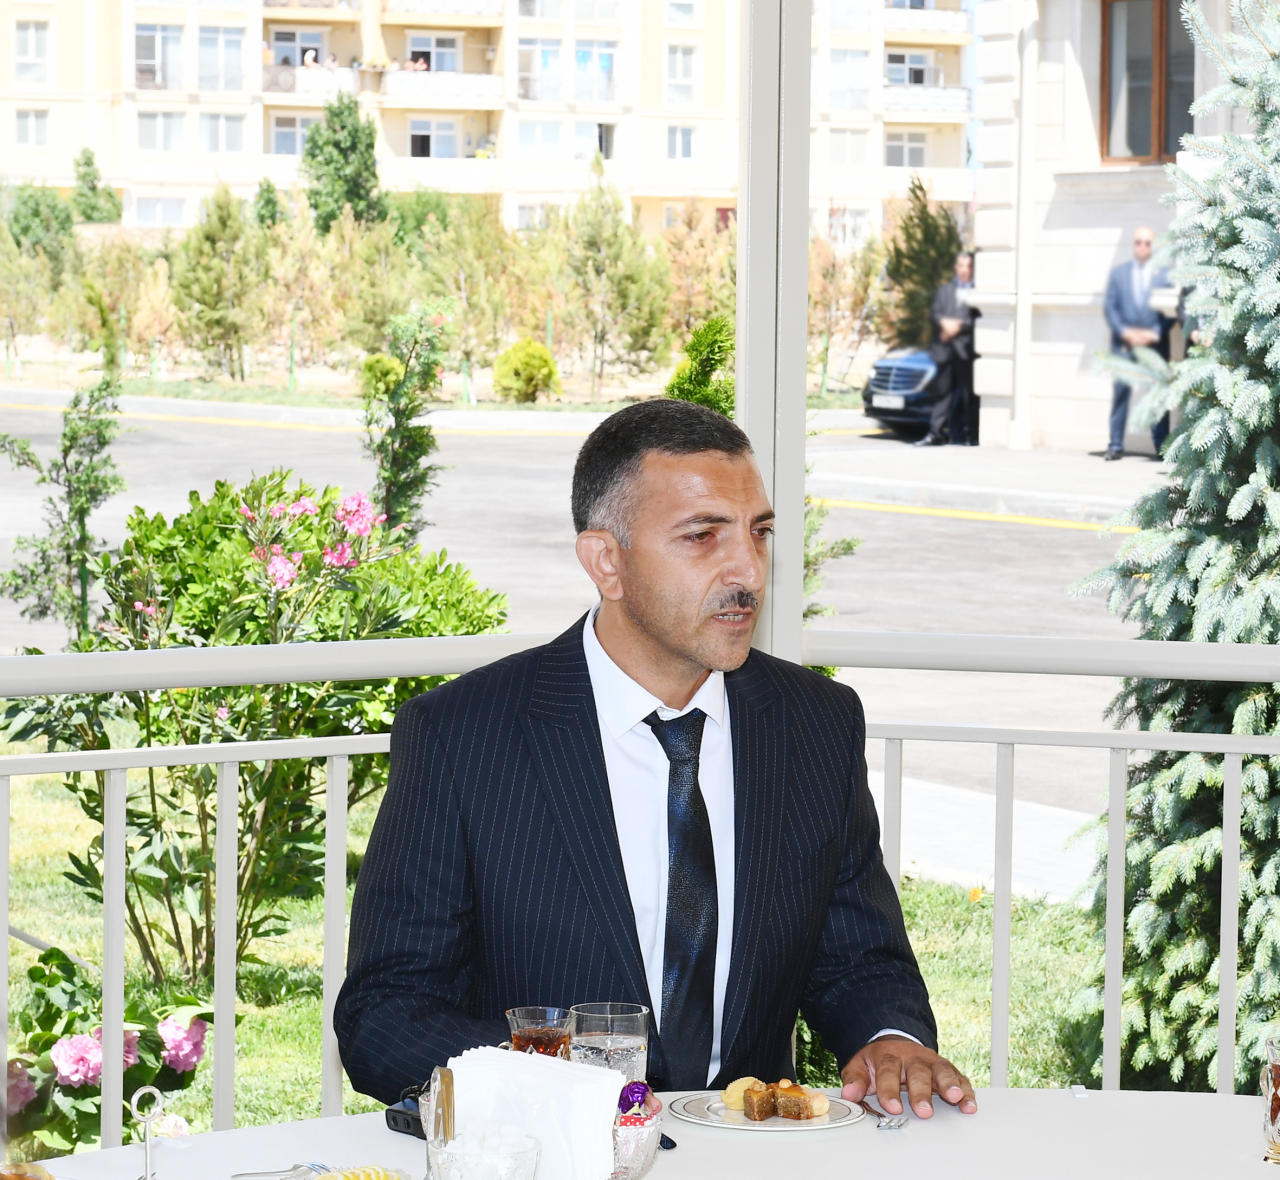 Президент Ильхам Алиев и Первая леди Мехрибан Алиева приняли участие в открытии жилого комплекса для вынужденных переселенцев в Баку